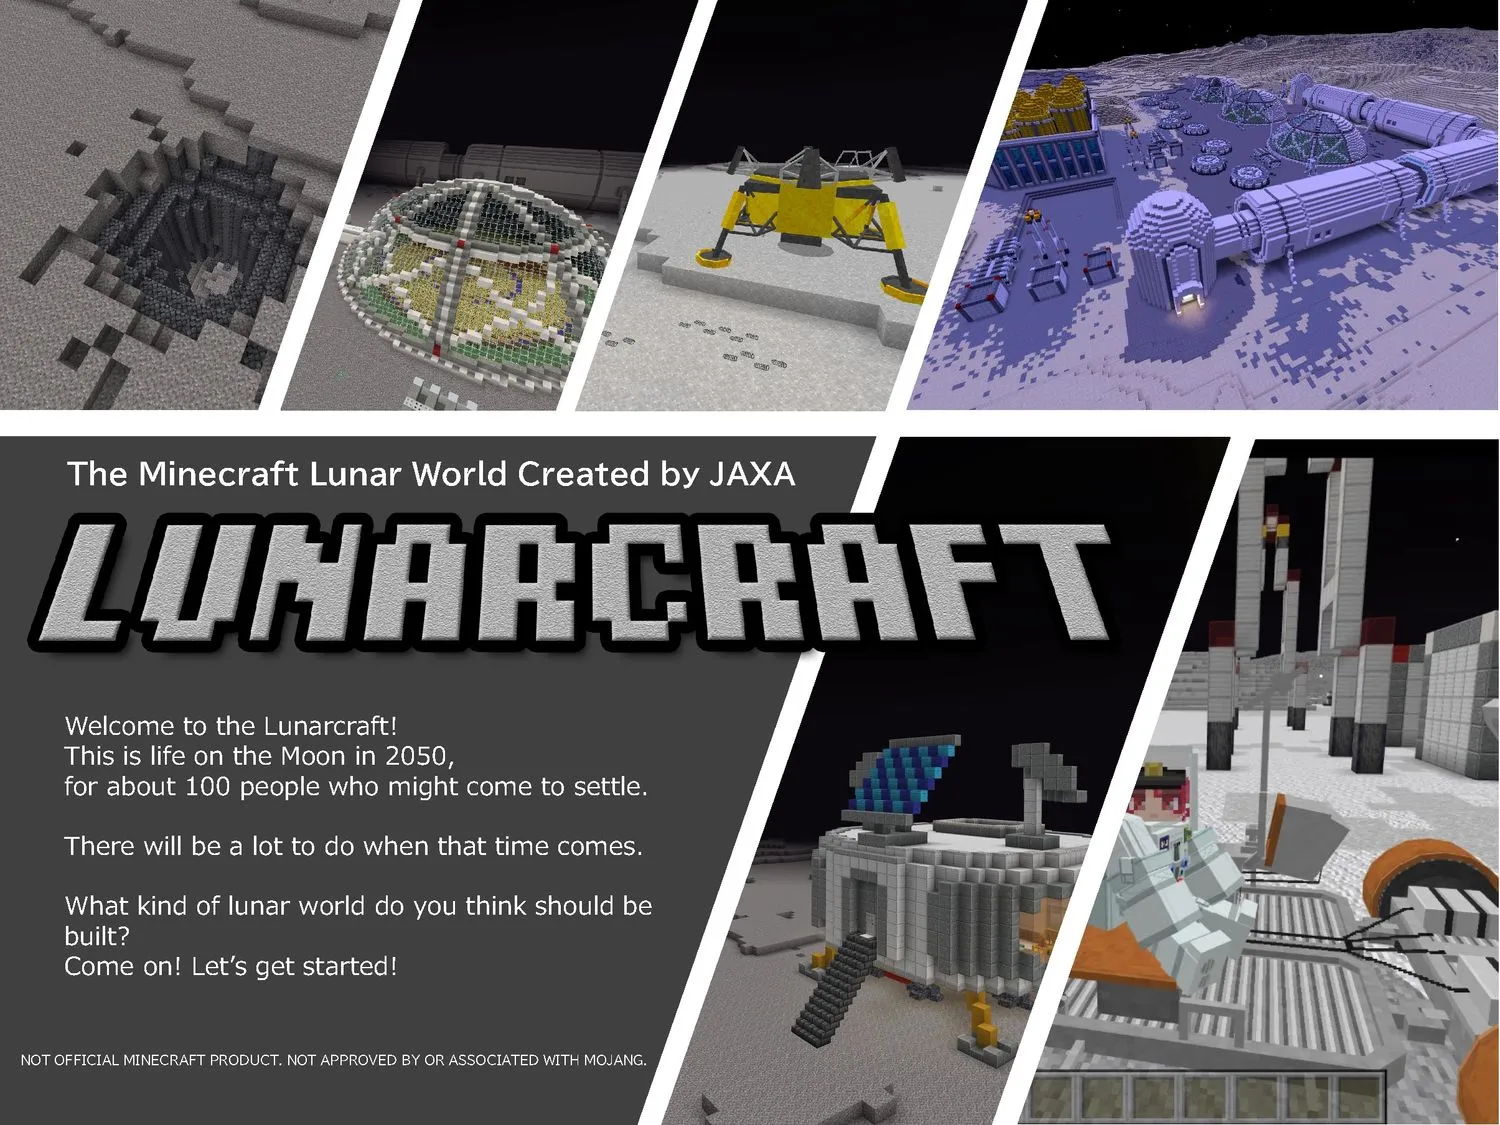 Werbung für das neue Spiel Lunarcraft, die sechs Standbilder aus dem Spiel zusammen mit einer Textbeschreibung zeigt.